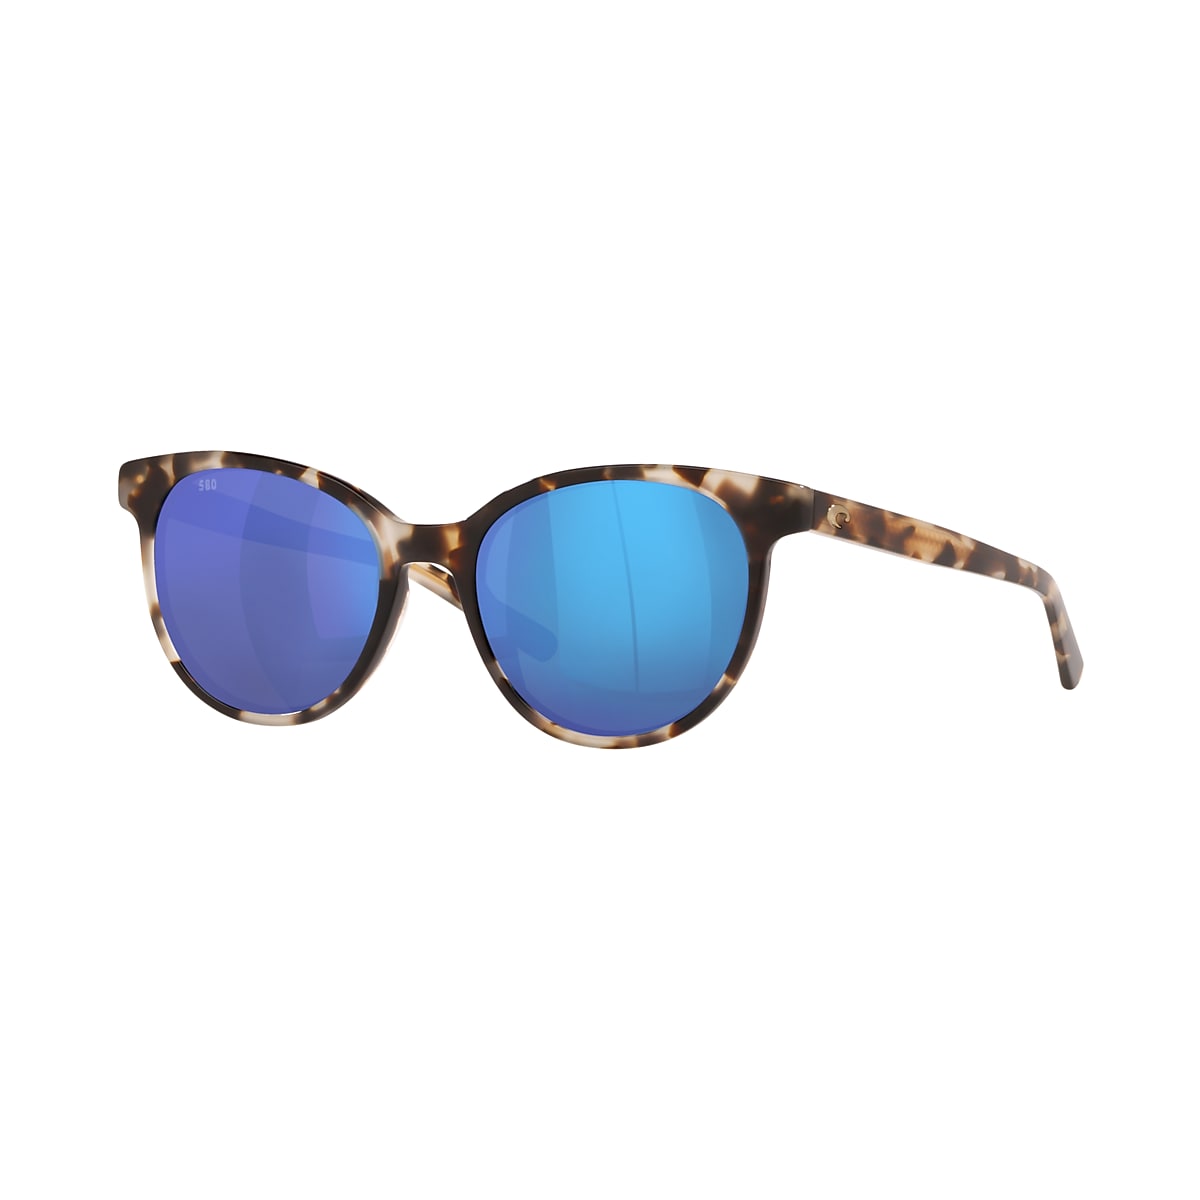 Cinhao Premium Polarized Sunglasses For Men Women Retro Square Frame Blue